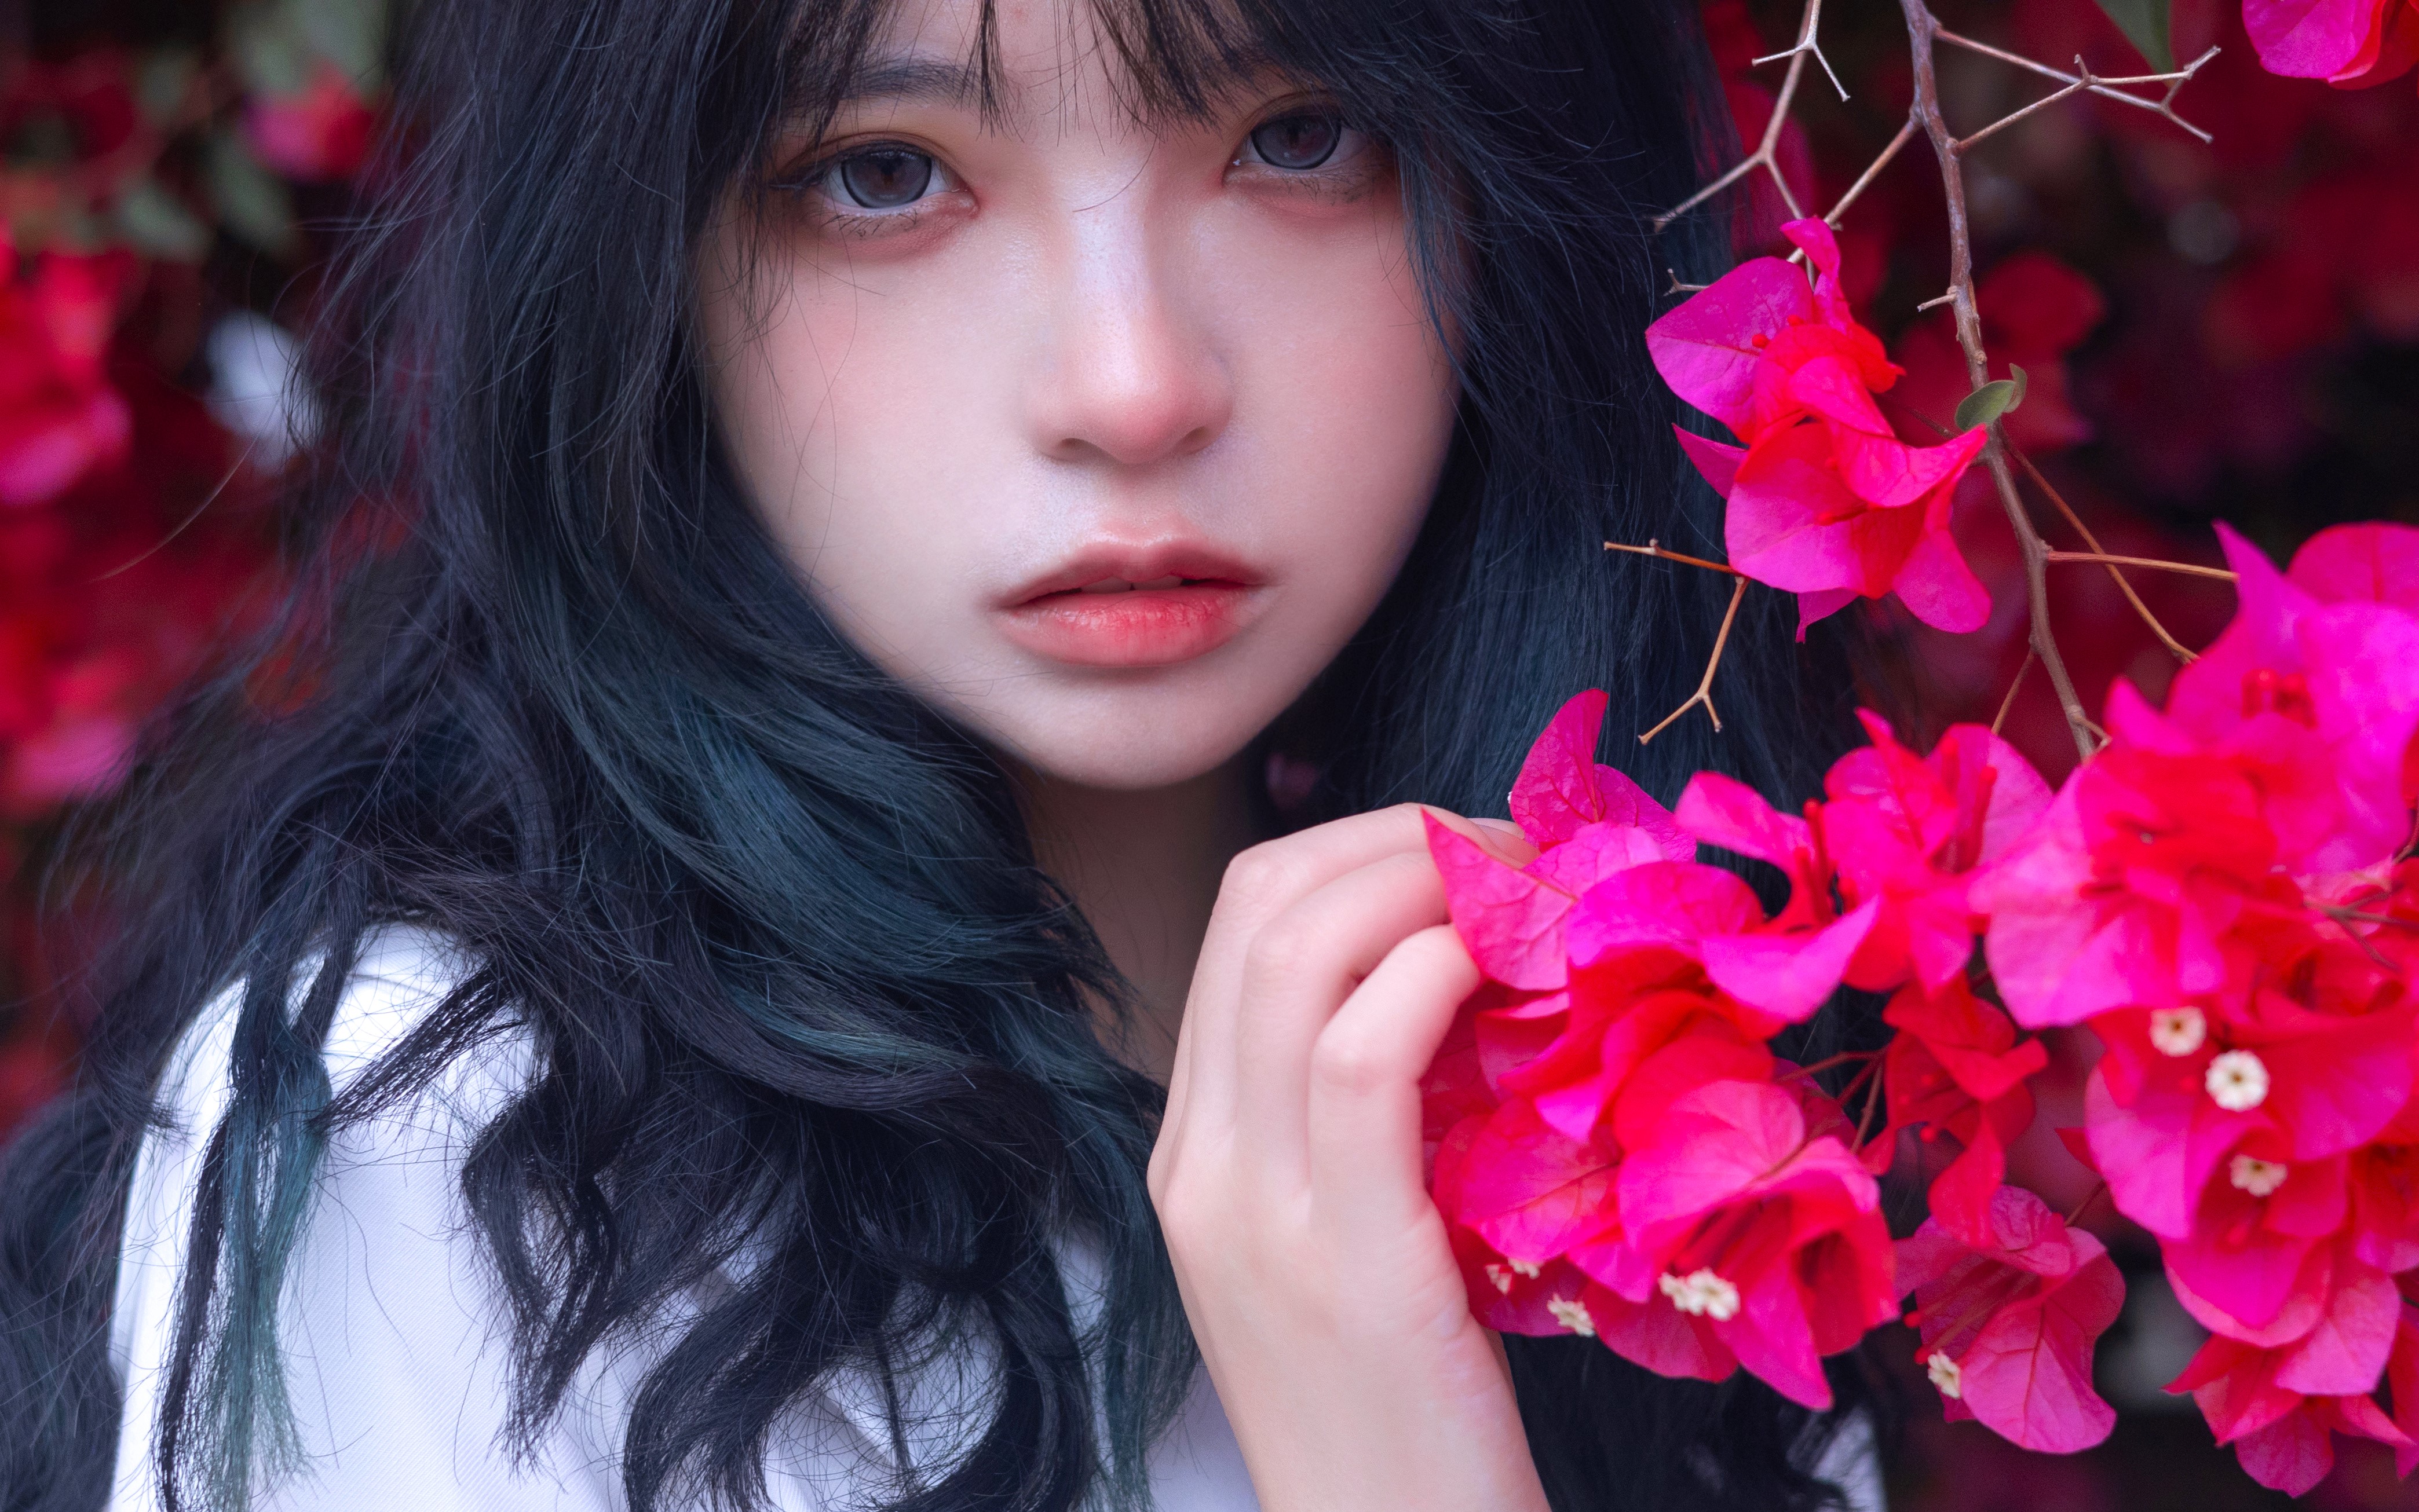 People 4176x2611 Asian women flowers women outdoors portrait